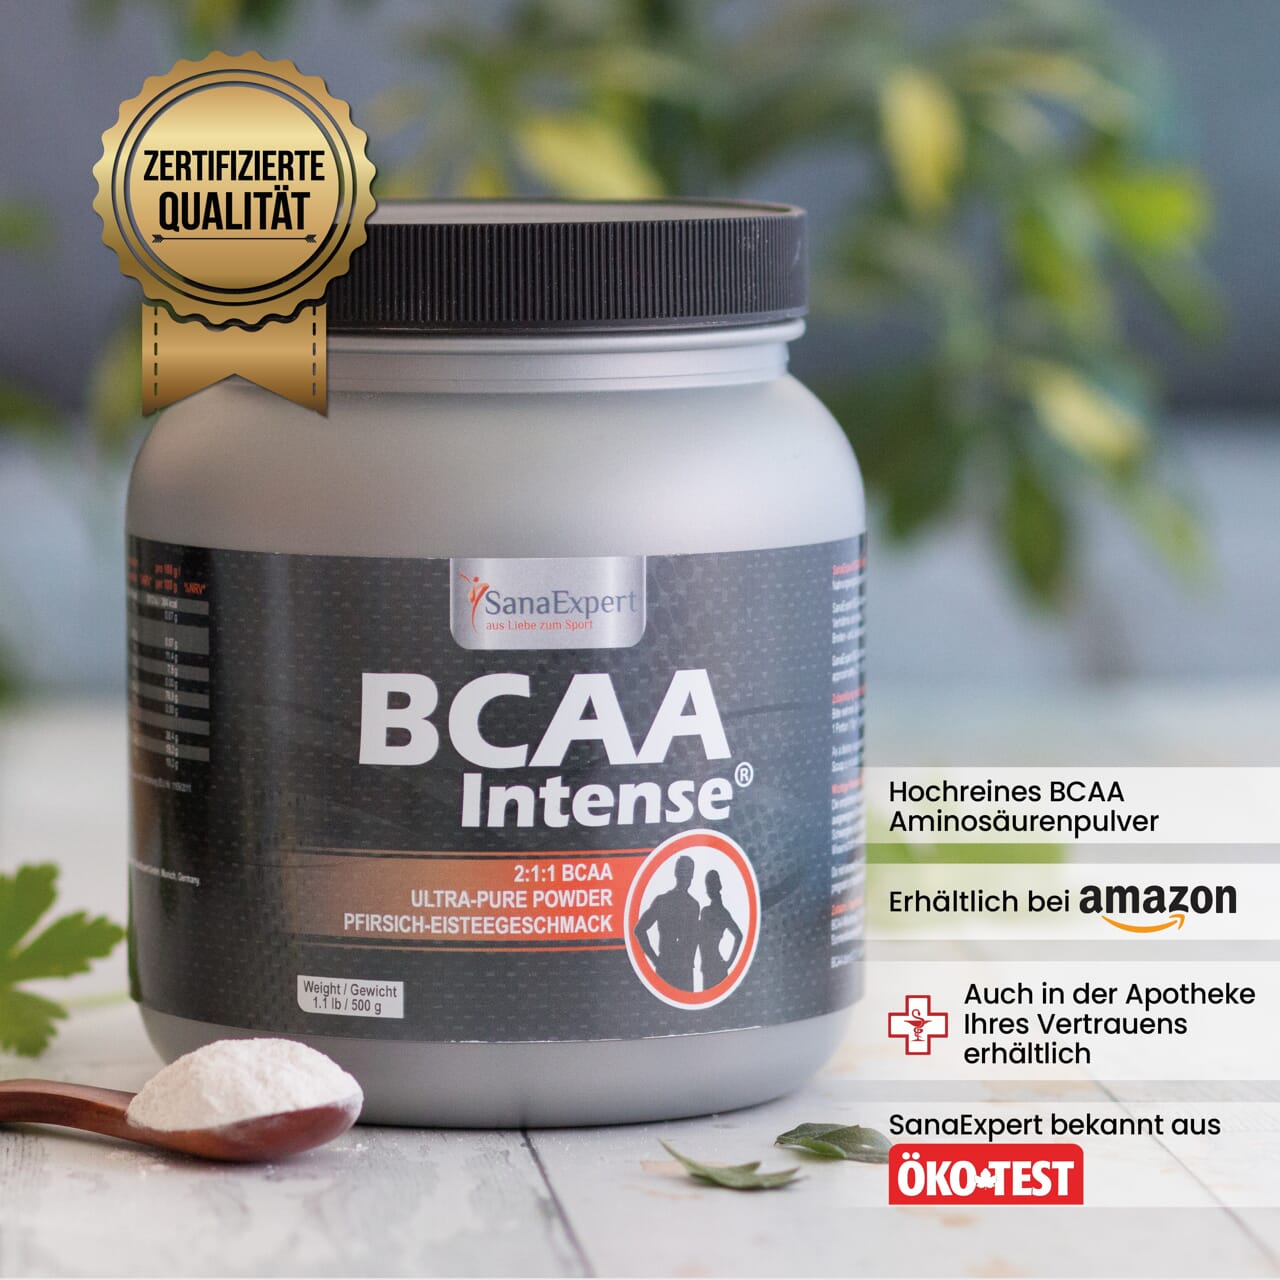 BCAA Intense Dose mit Fokus auf das Qualitätssiegel, die natürlichen Inhaltsstoffe und Verfügbarkeitshinweise, im Hintergrund eine grüne Pflanze.